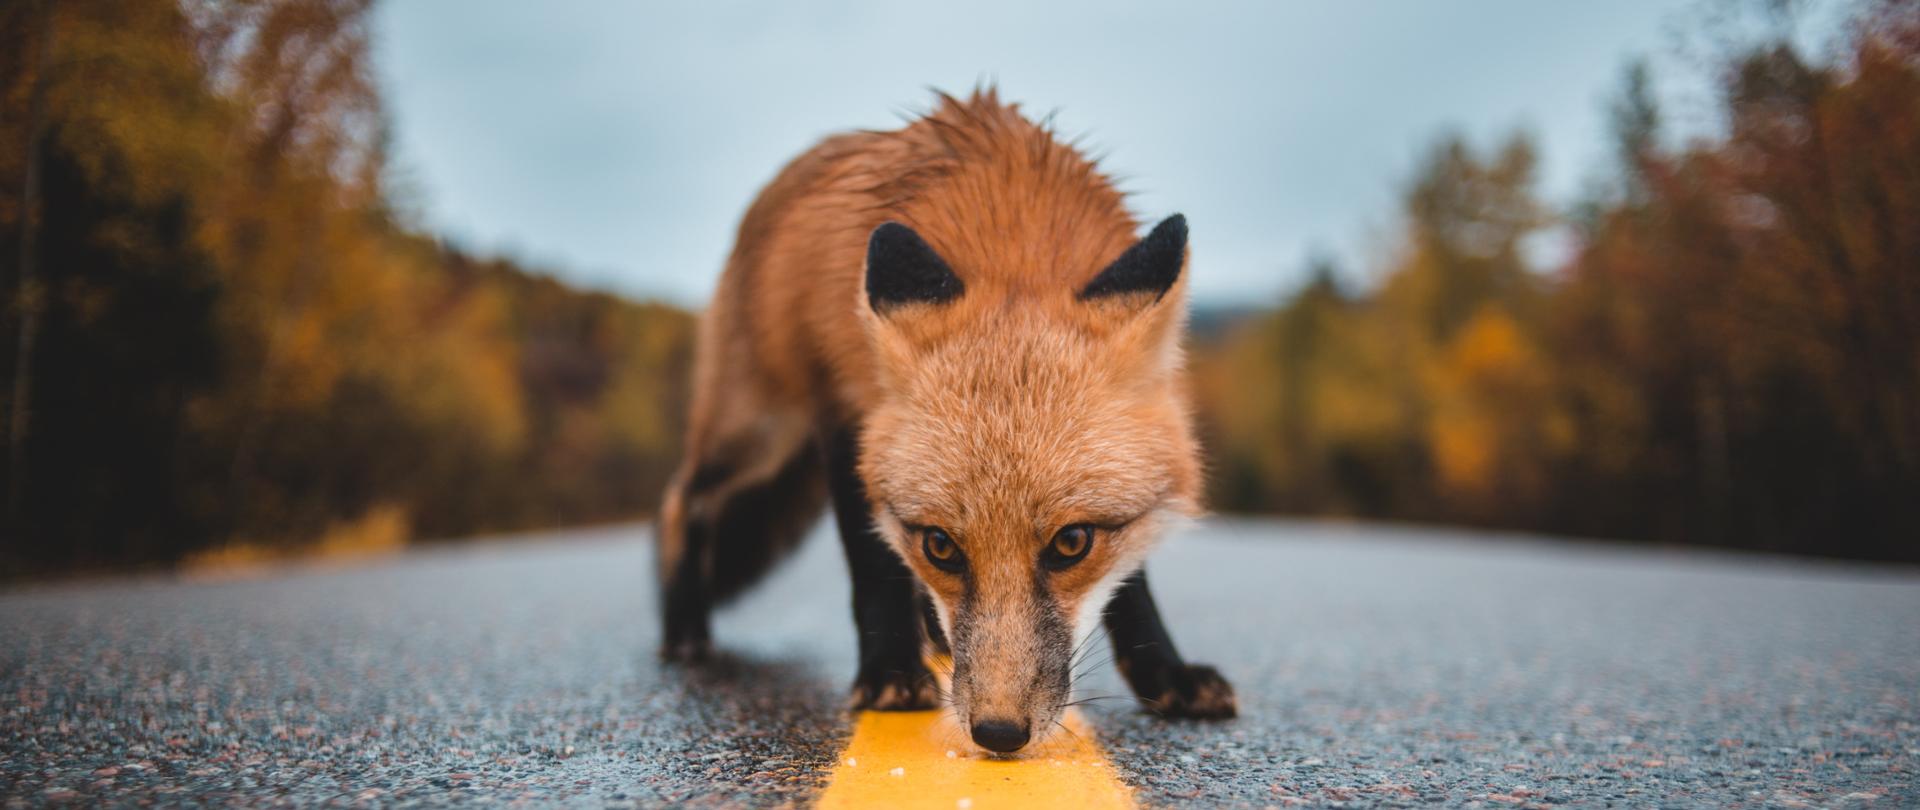 Zdjęcie przedstawiające dzikiego lisa poruszającego się po jezdni